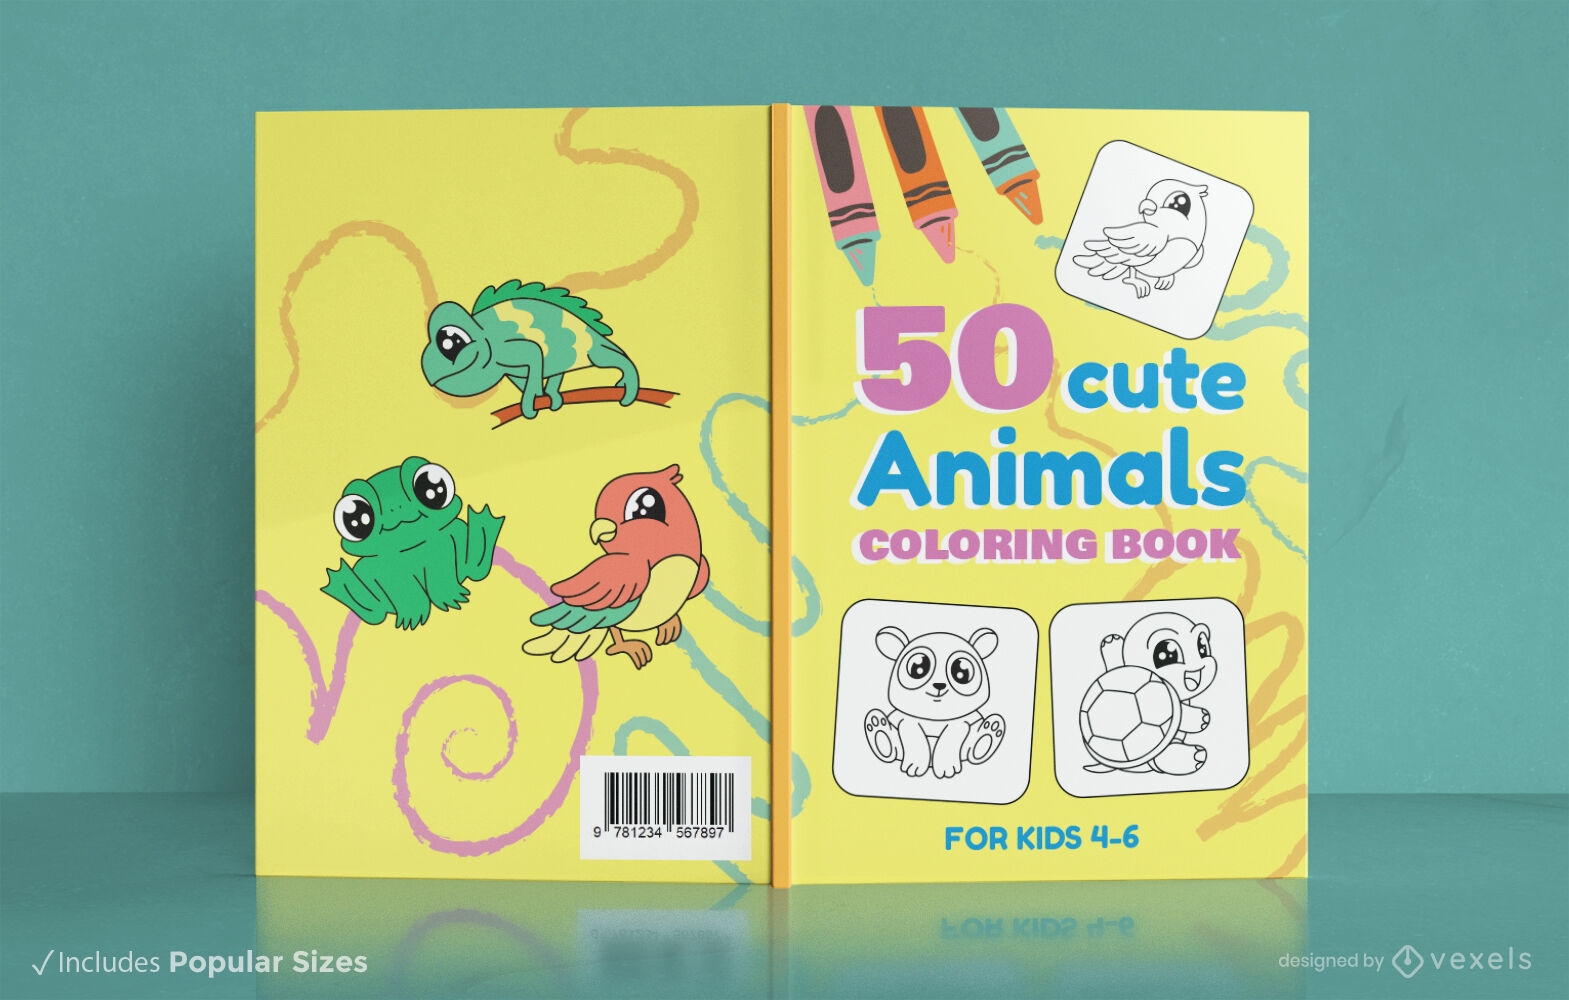 Arte para páginas de livros de colorir infantis fofos, todos os pokémons  brancos em estilo infantil